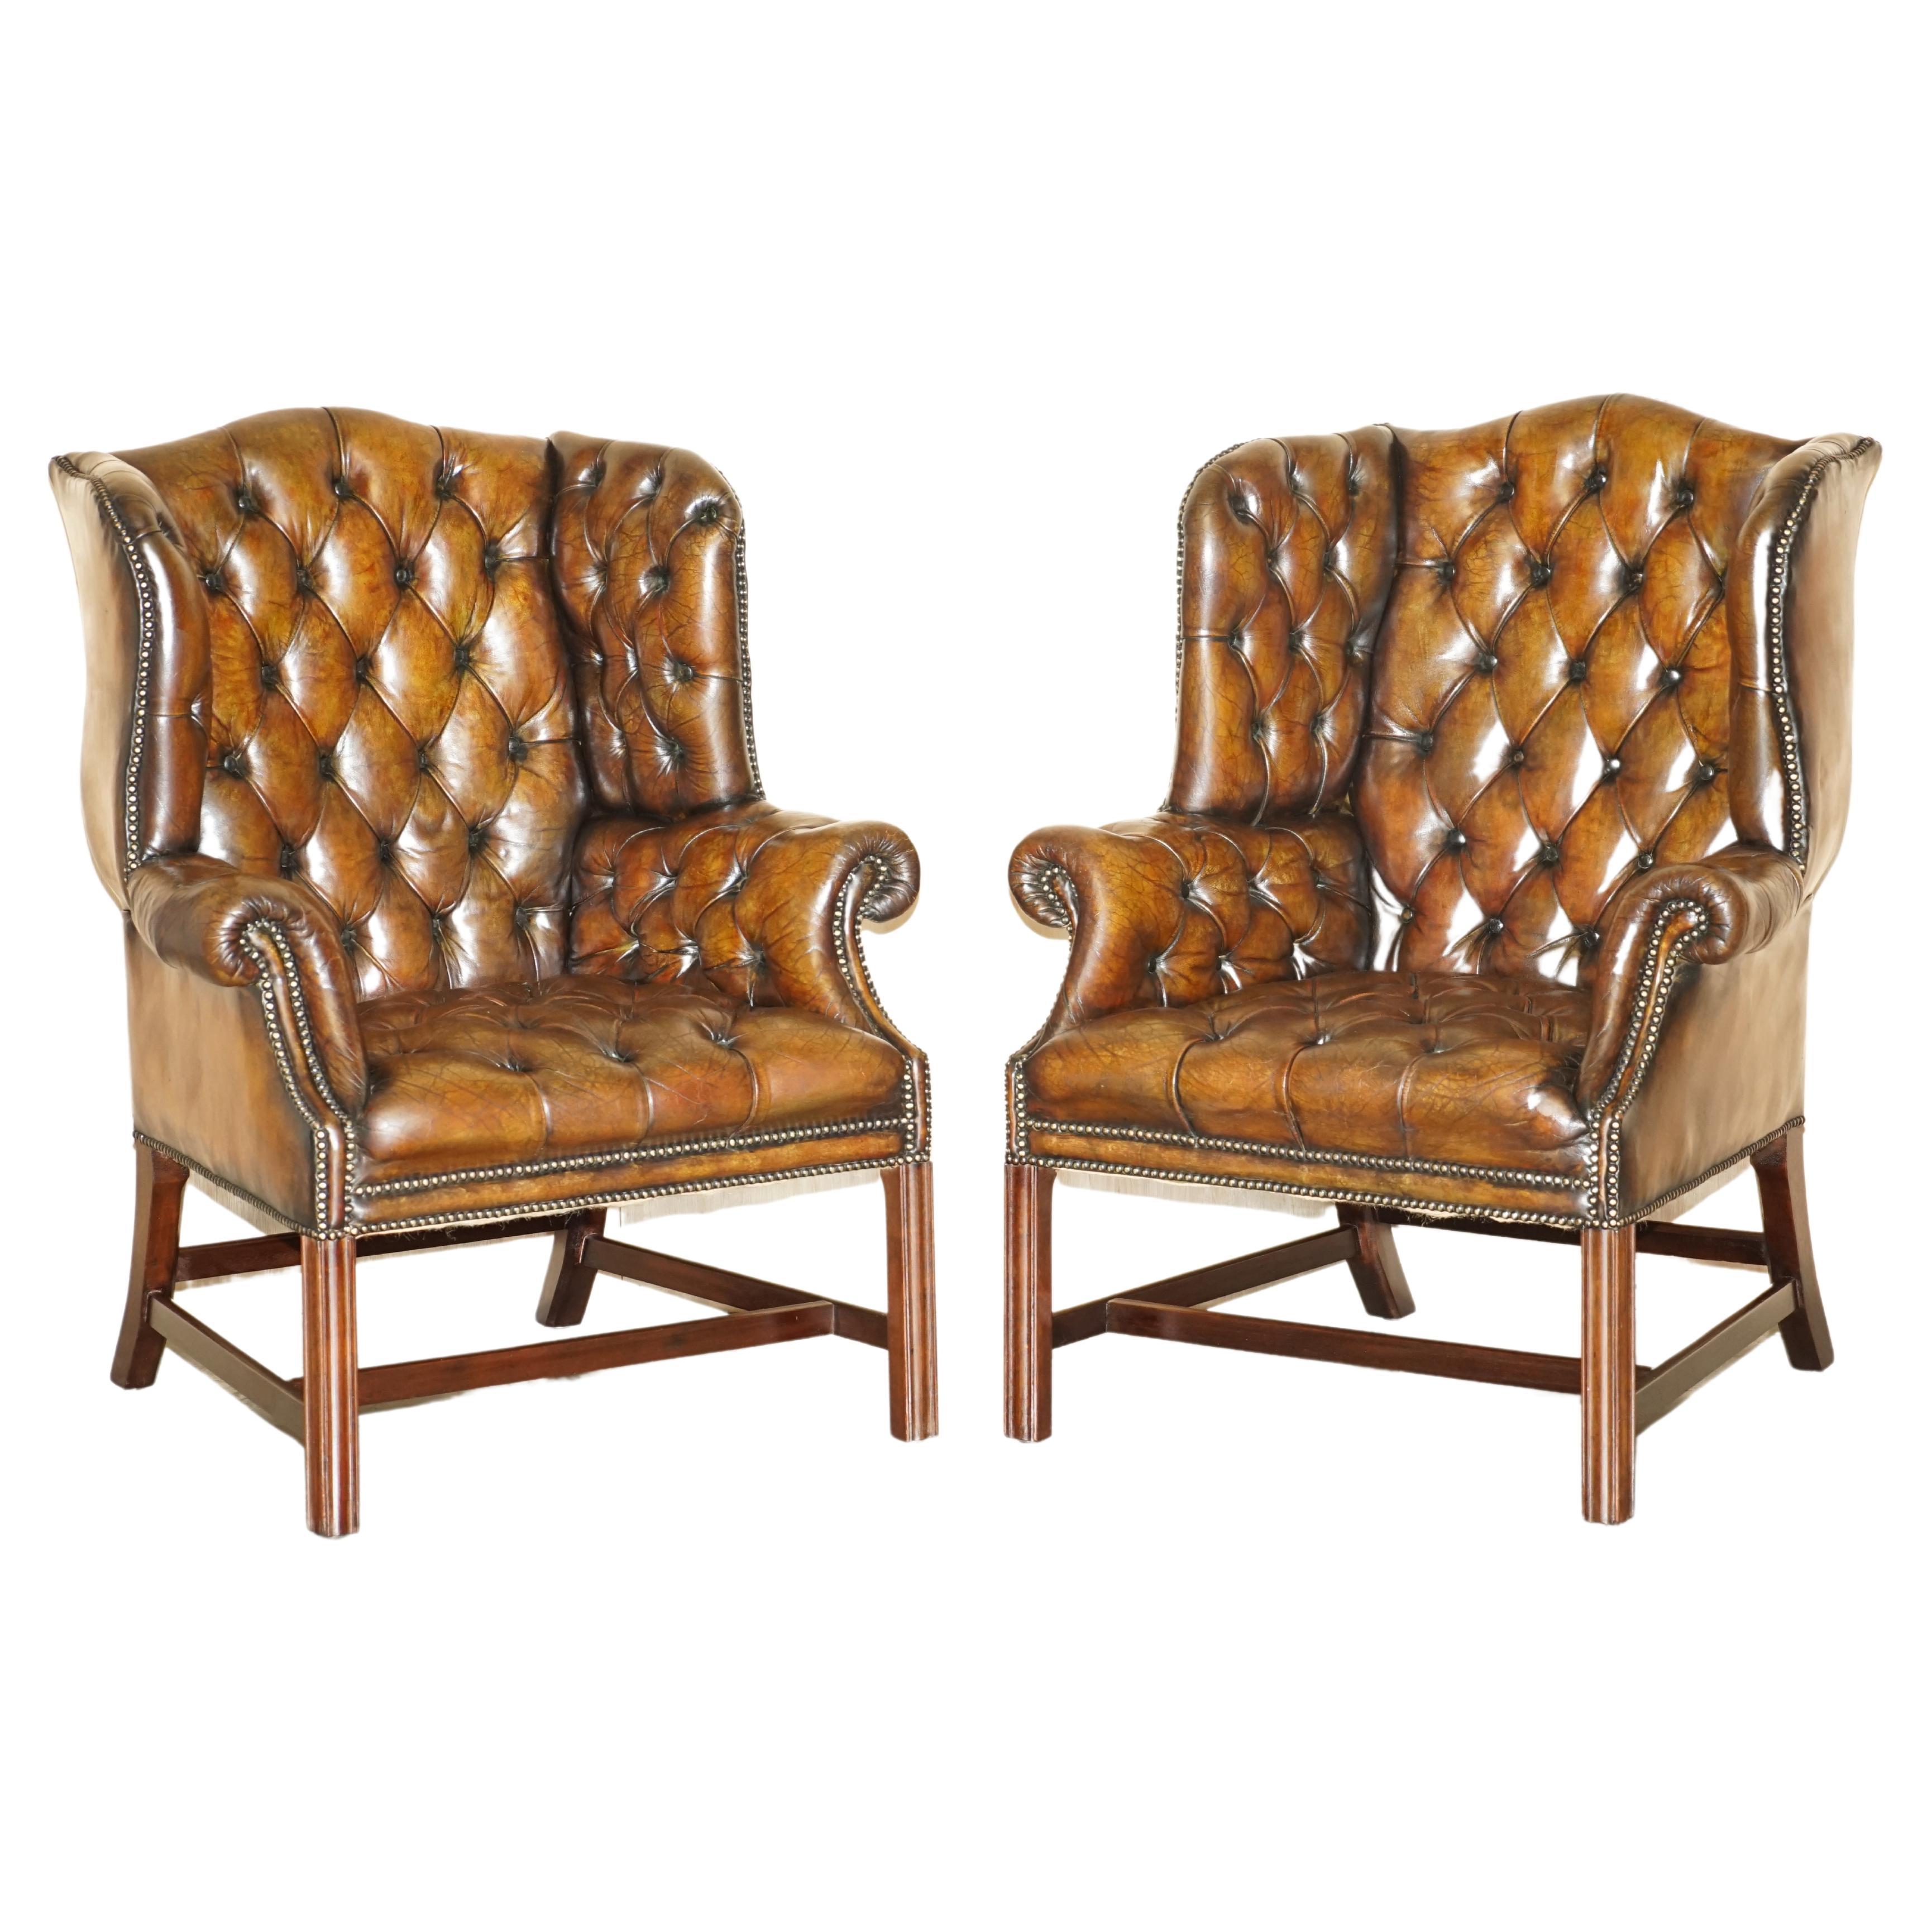 Paire de fauteuils Chesterfield en cuir brun teint à la main entièrement restaurés